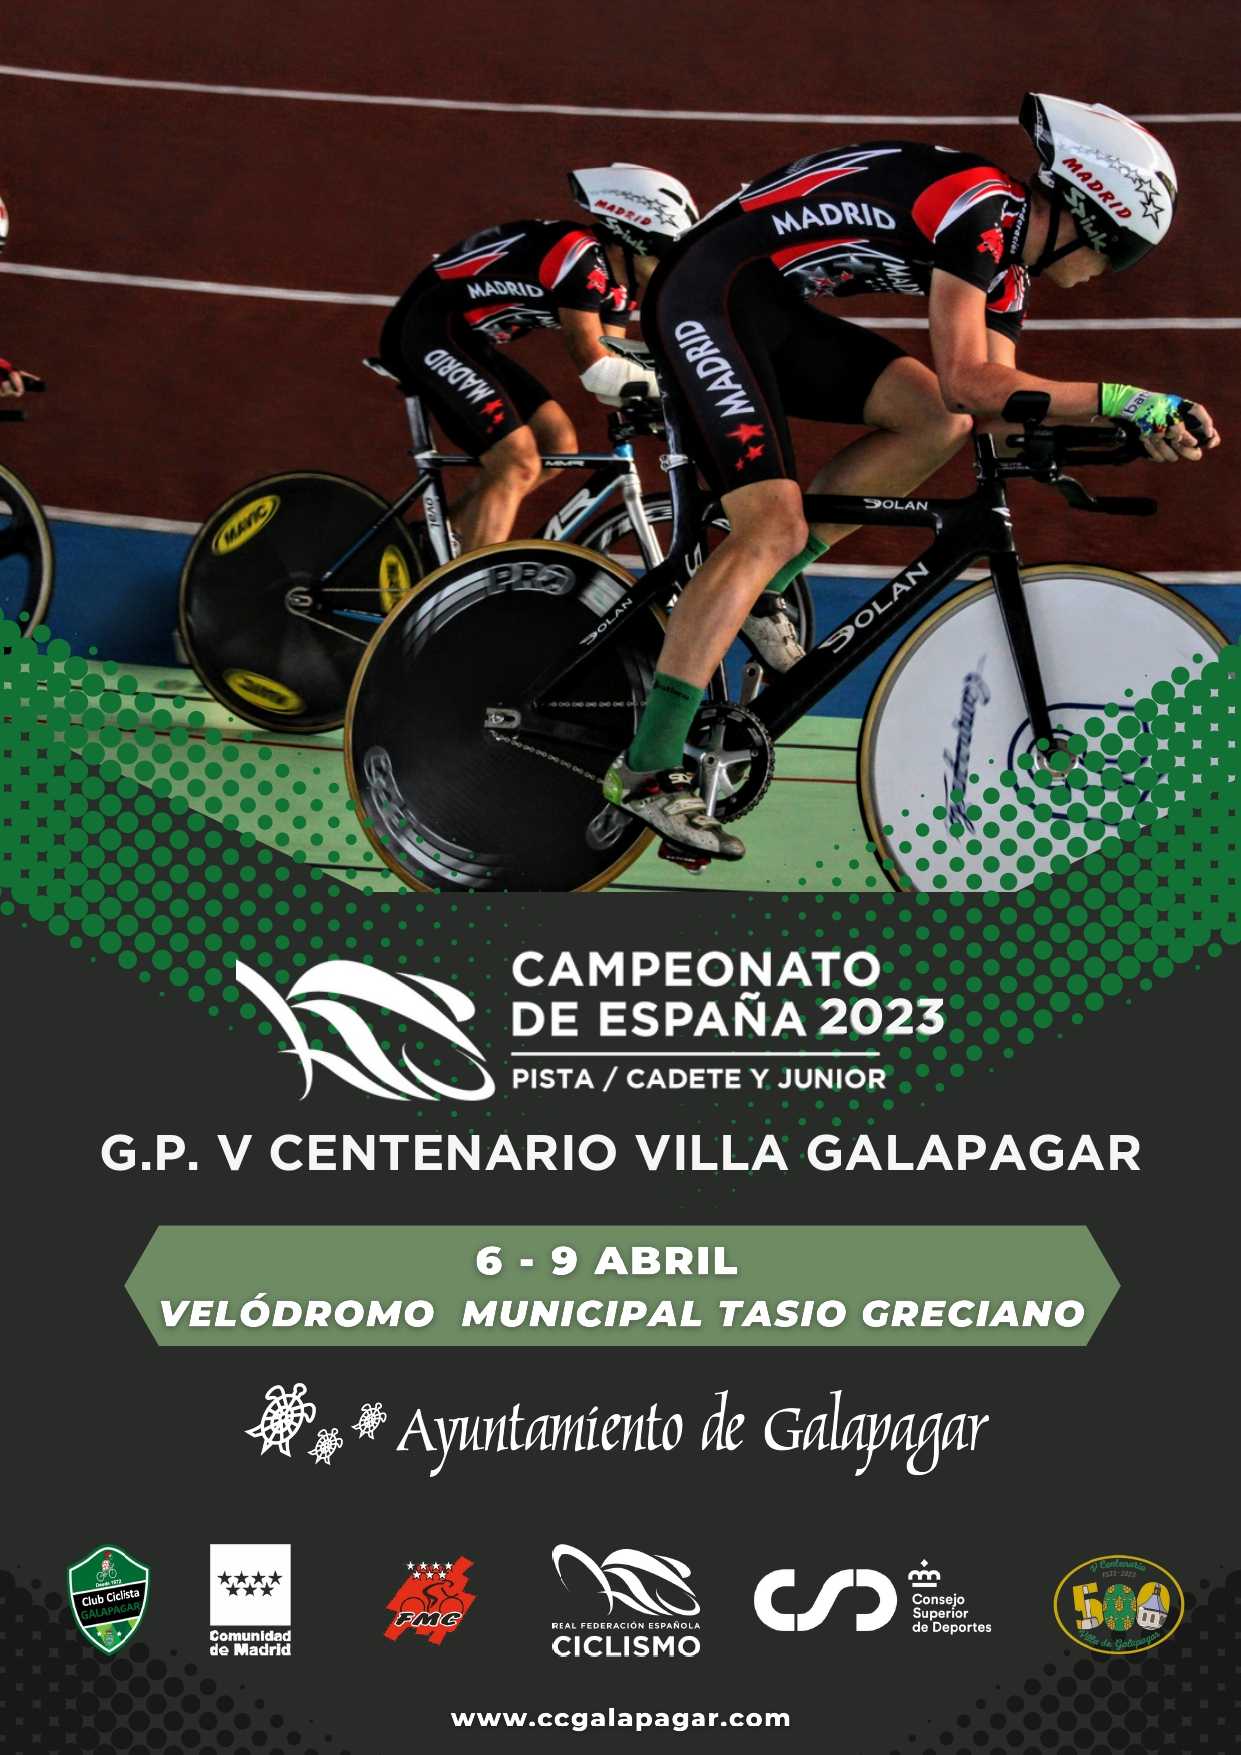 Galapagar se viste de nuevo del mejor ciclismo en pista para acoger el campeonato de España para cadetes y juniors